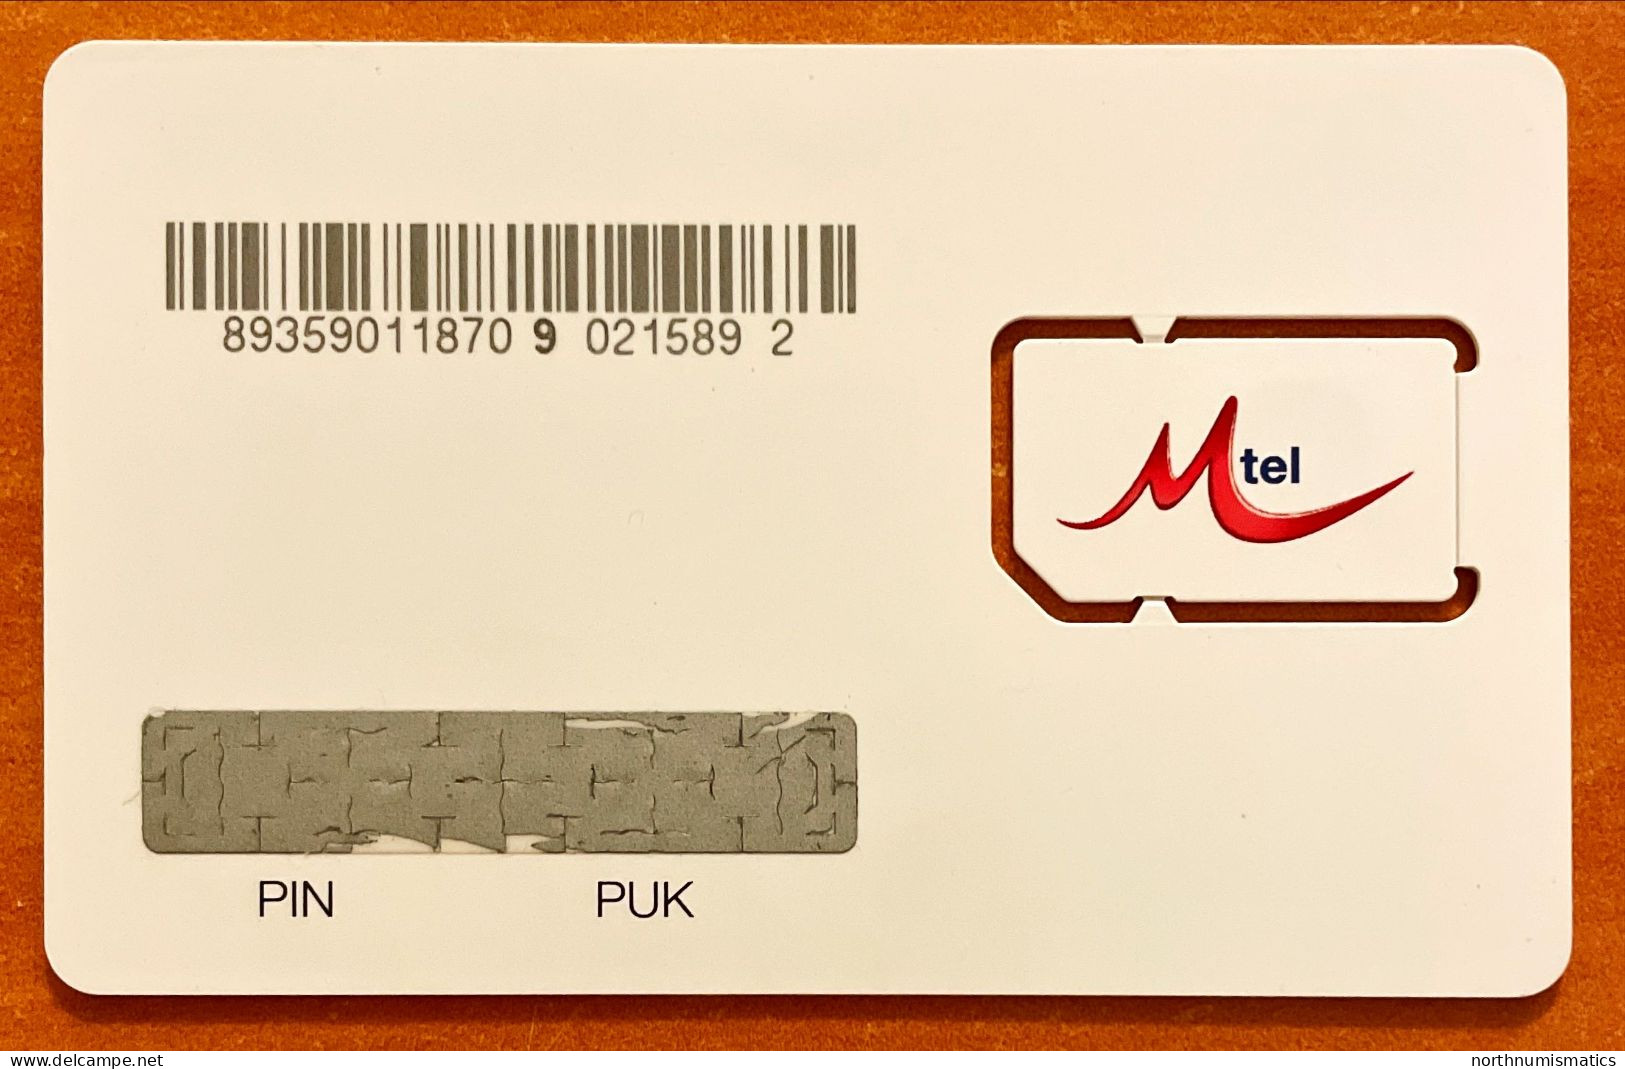 Mtel  Gsm  Original Chip Sim Card Unused - Sammlungen